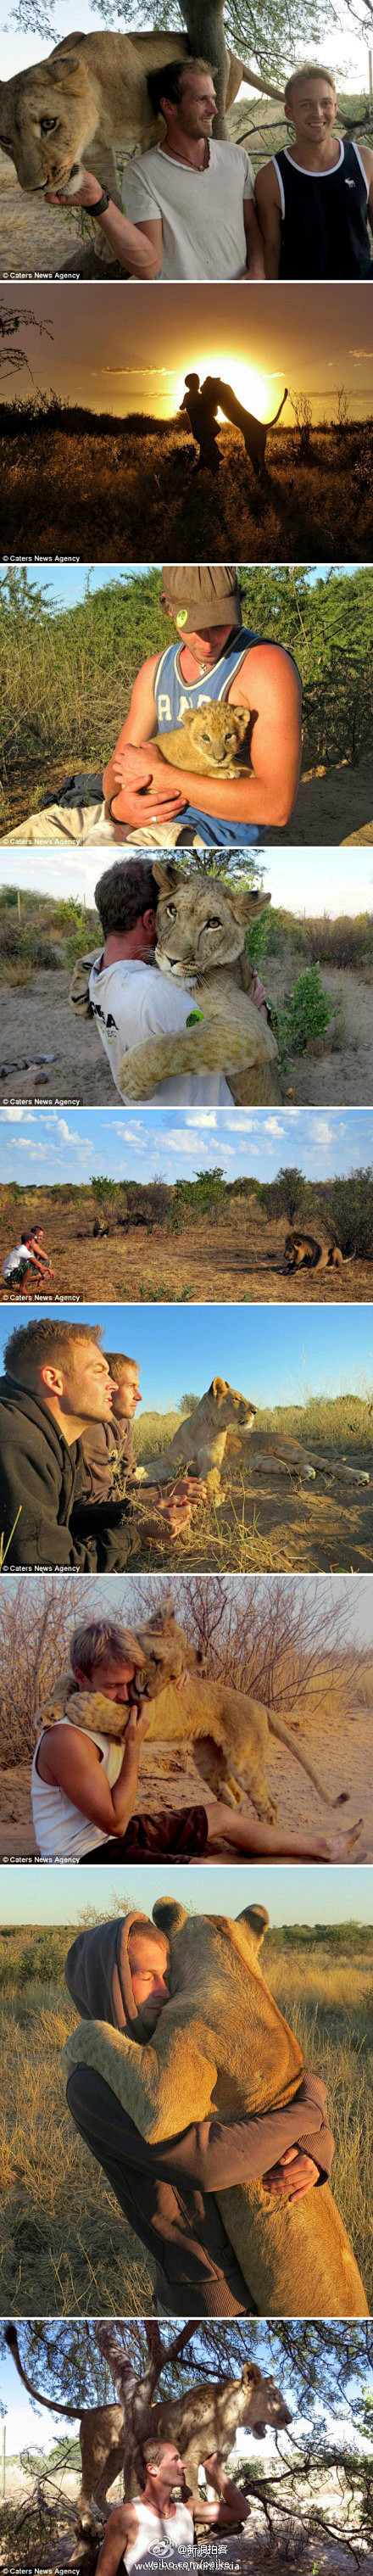 两个男人和一头狮子的故事】在南部非洲的博...